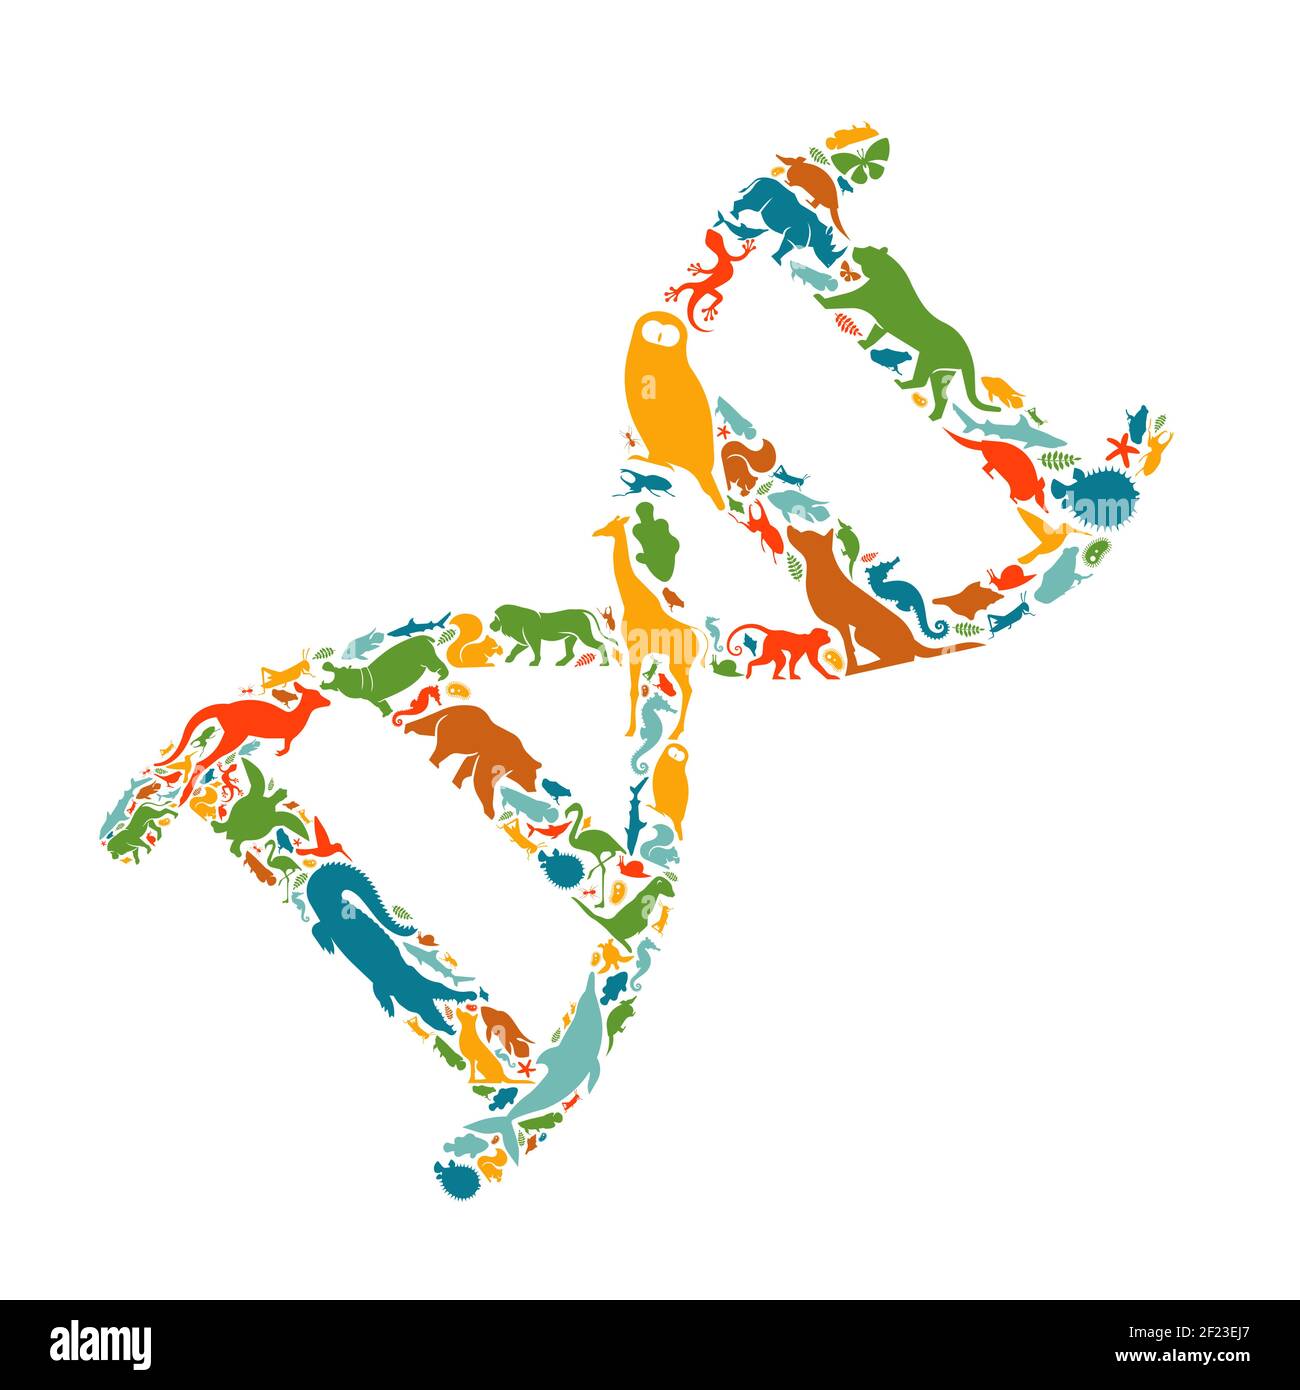 Verschiedene Tierformen machen DNA Strang Form auf isolierten weißen Hintergrund. Flache Tiere Silhouette Illustration. Wissenschaftliche Forschung, Biodiversität, OR Stock Vektor